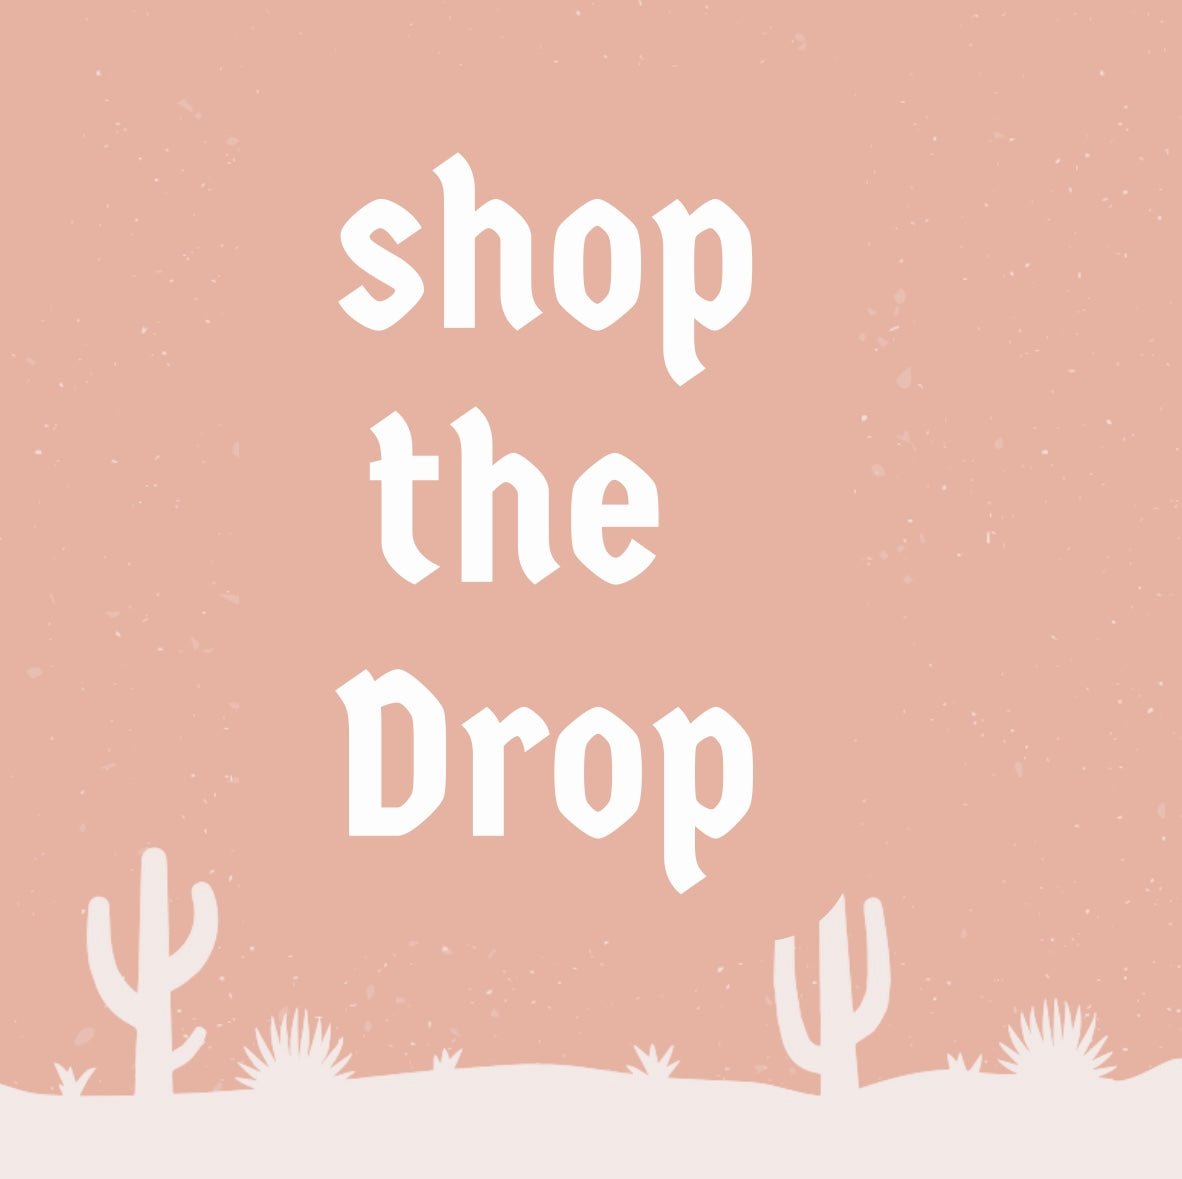 Shop the DROP